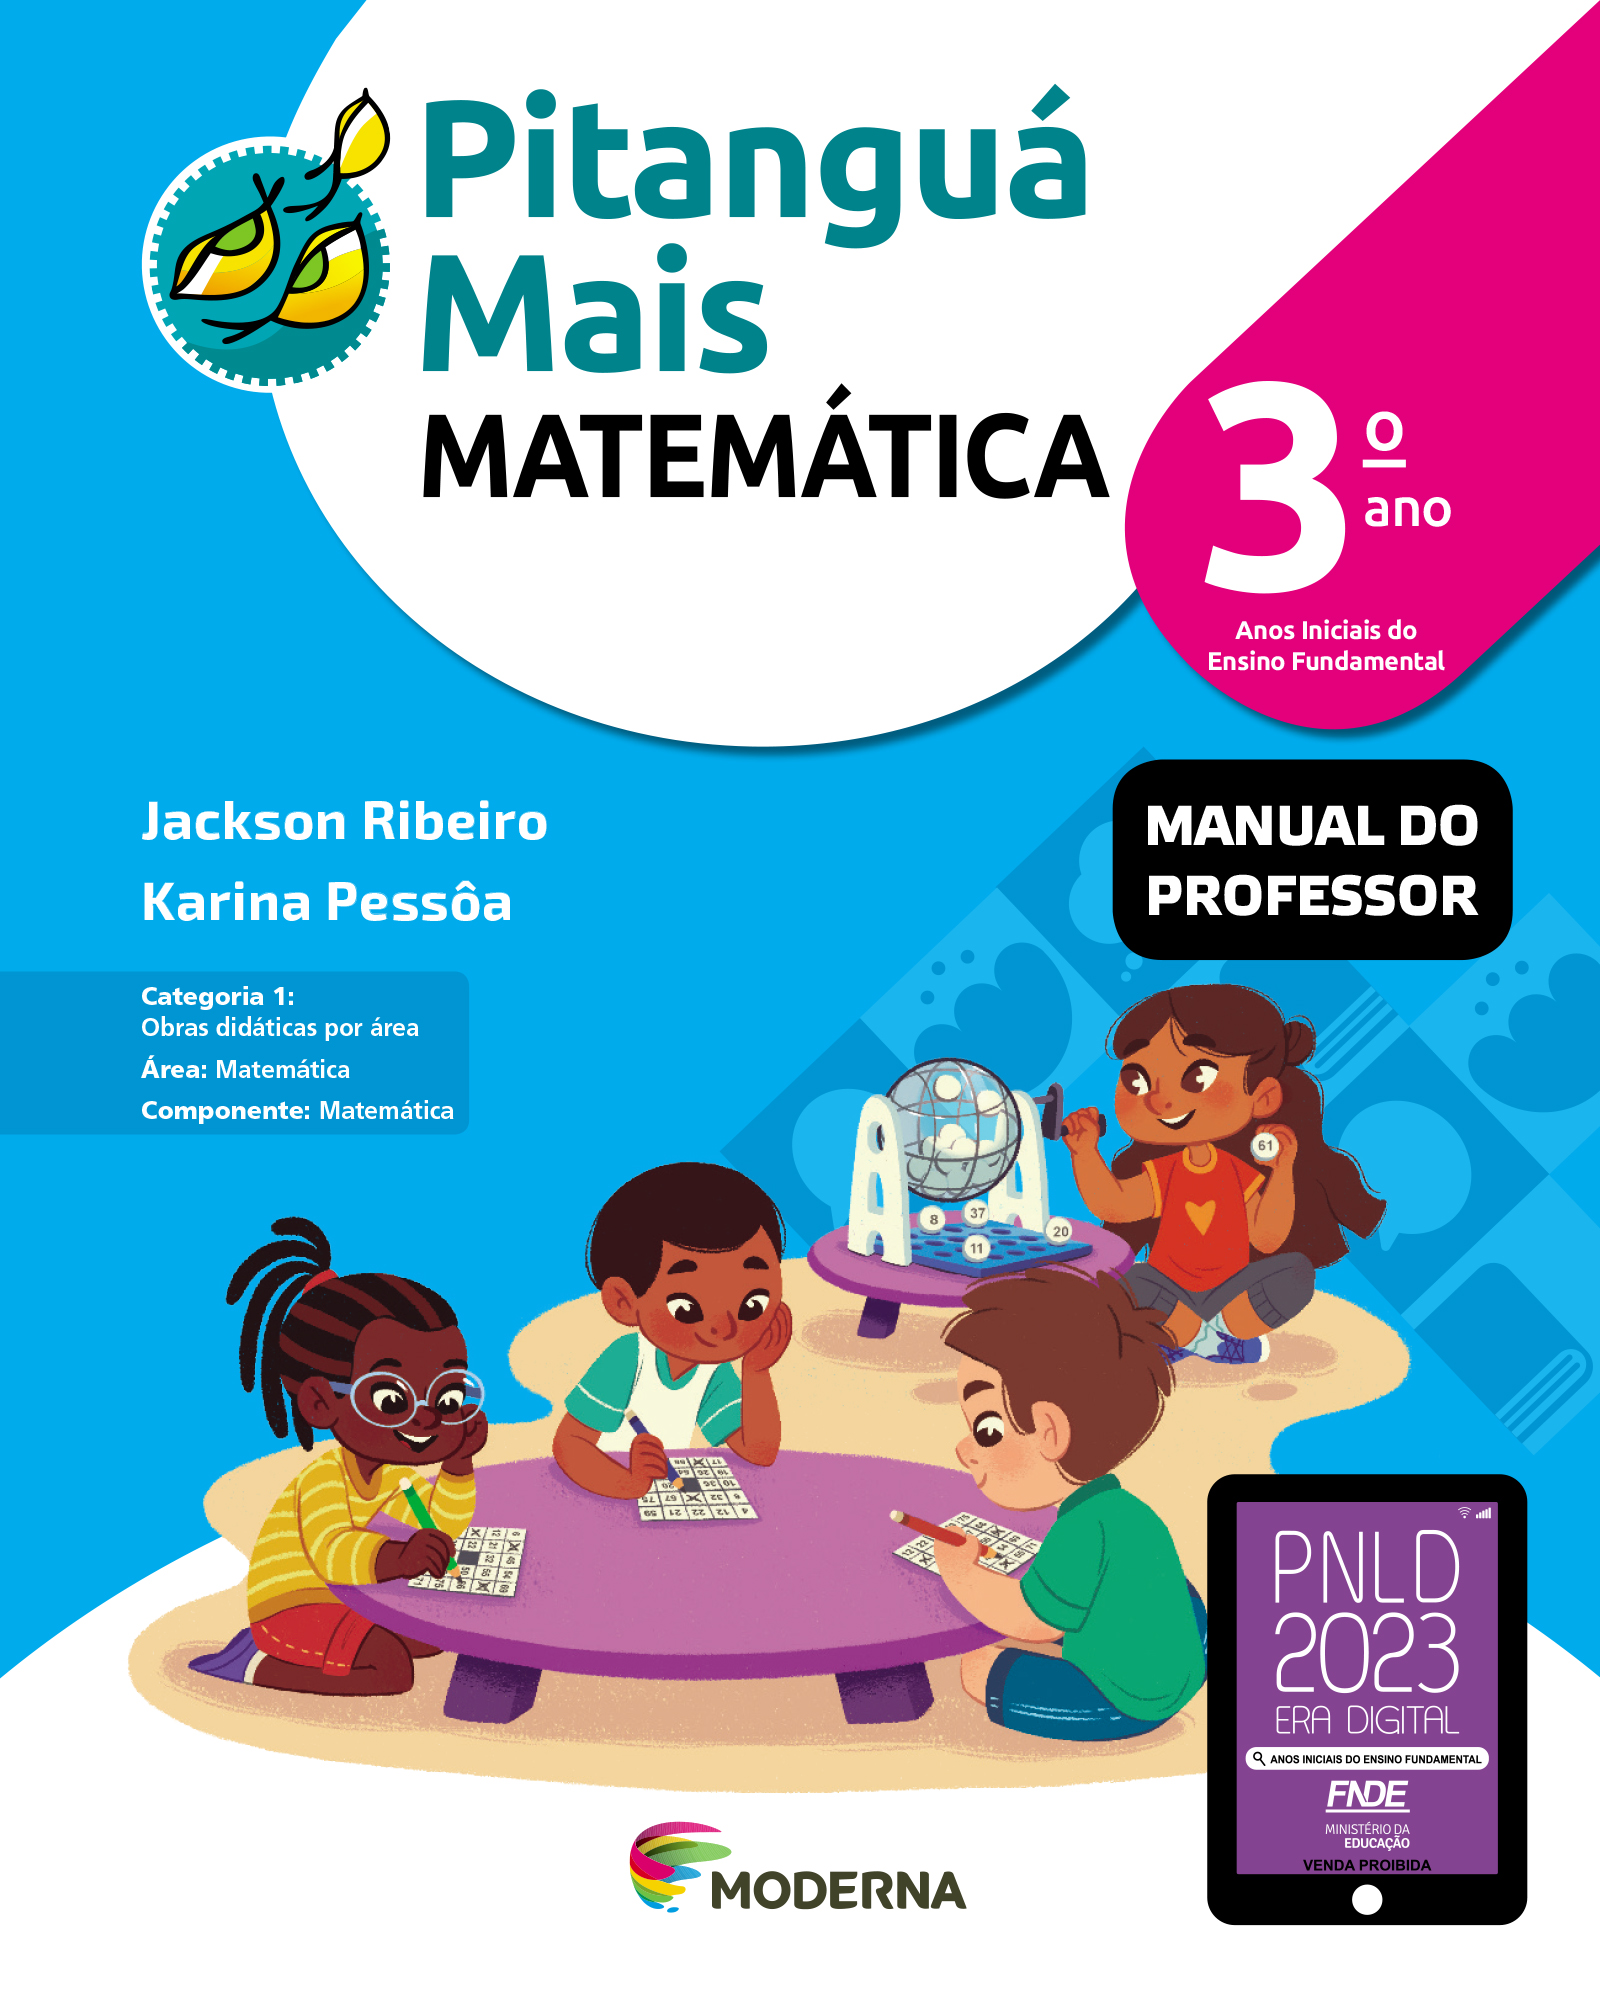 IMAGEM: capa do livro Pitanguá Mais MATEMÁTICA 3 manual do professor. quatro crianças brincam de bingo. FIM DA IMAGEM.